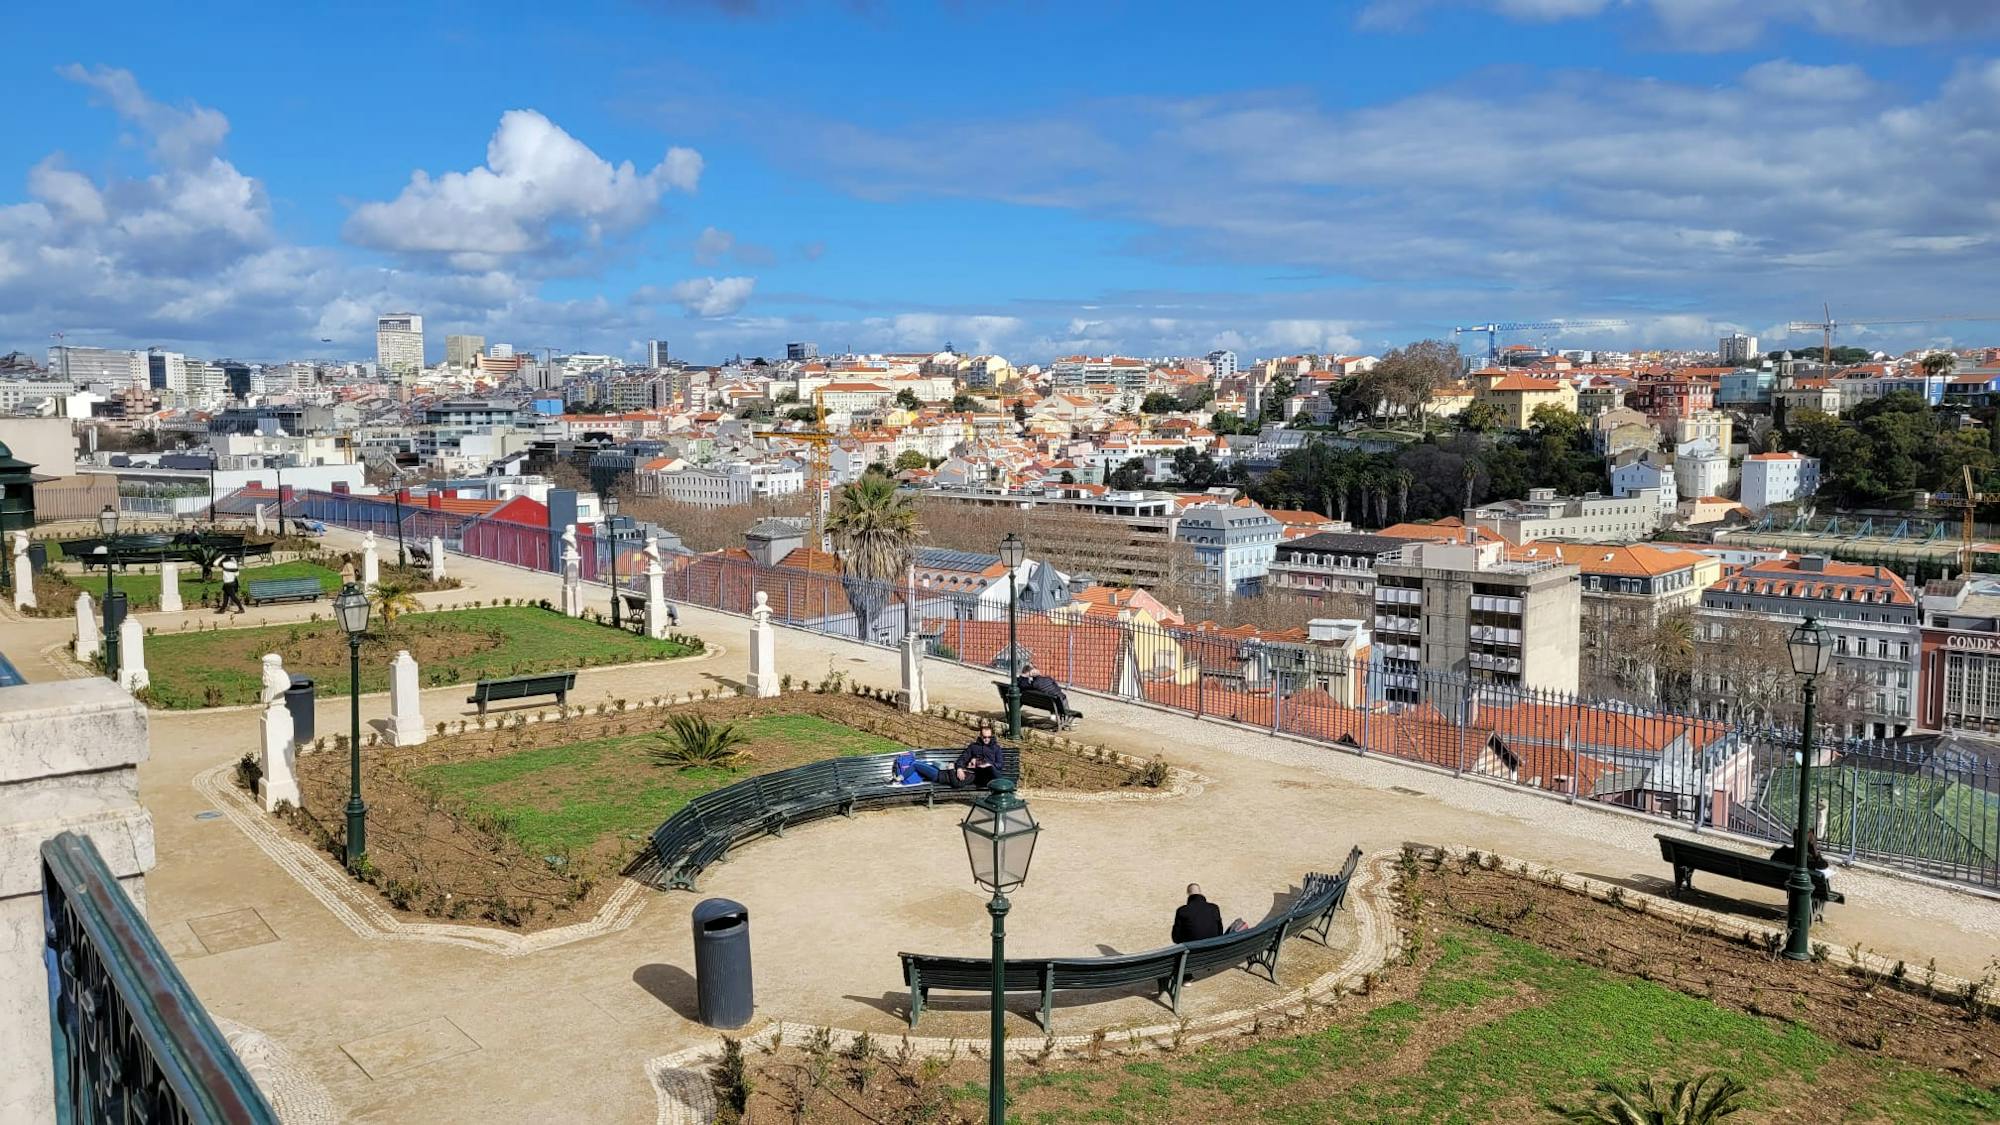 Miradouro de São Pedro de Alcântara: otoczony zielenią z widokiem na Lizbonę